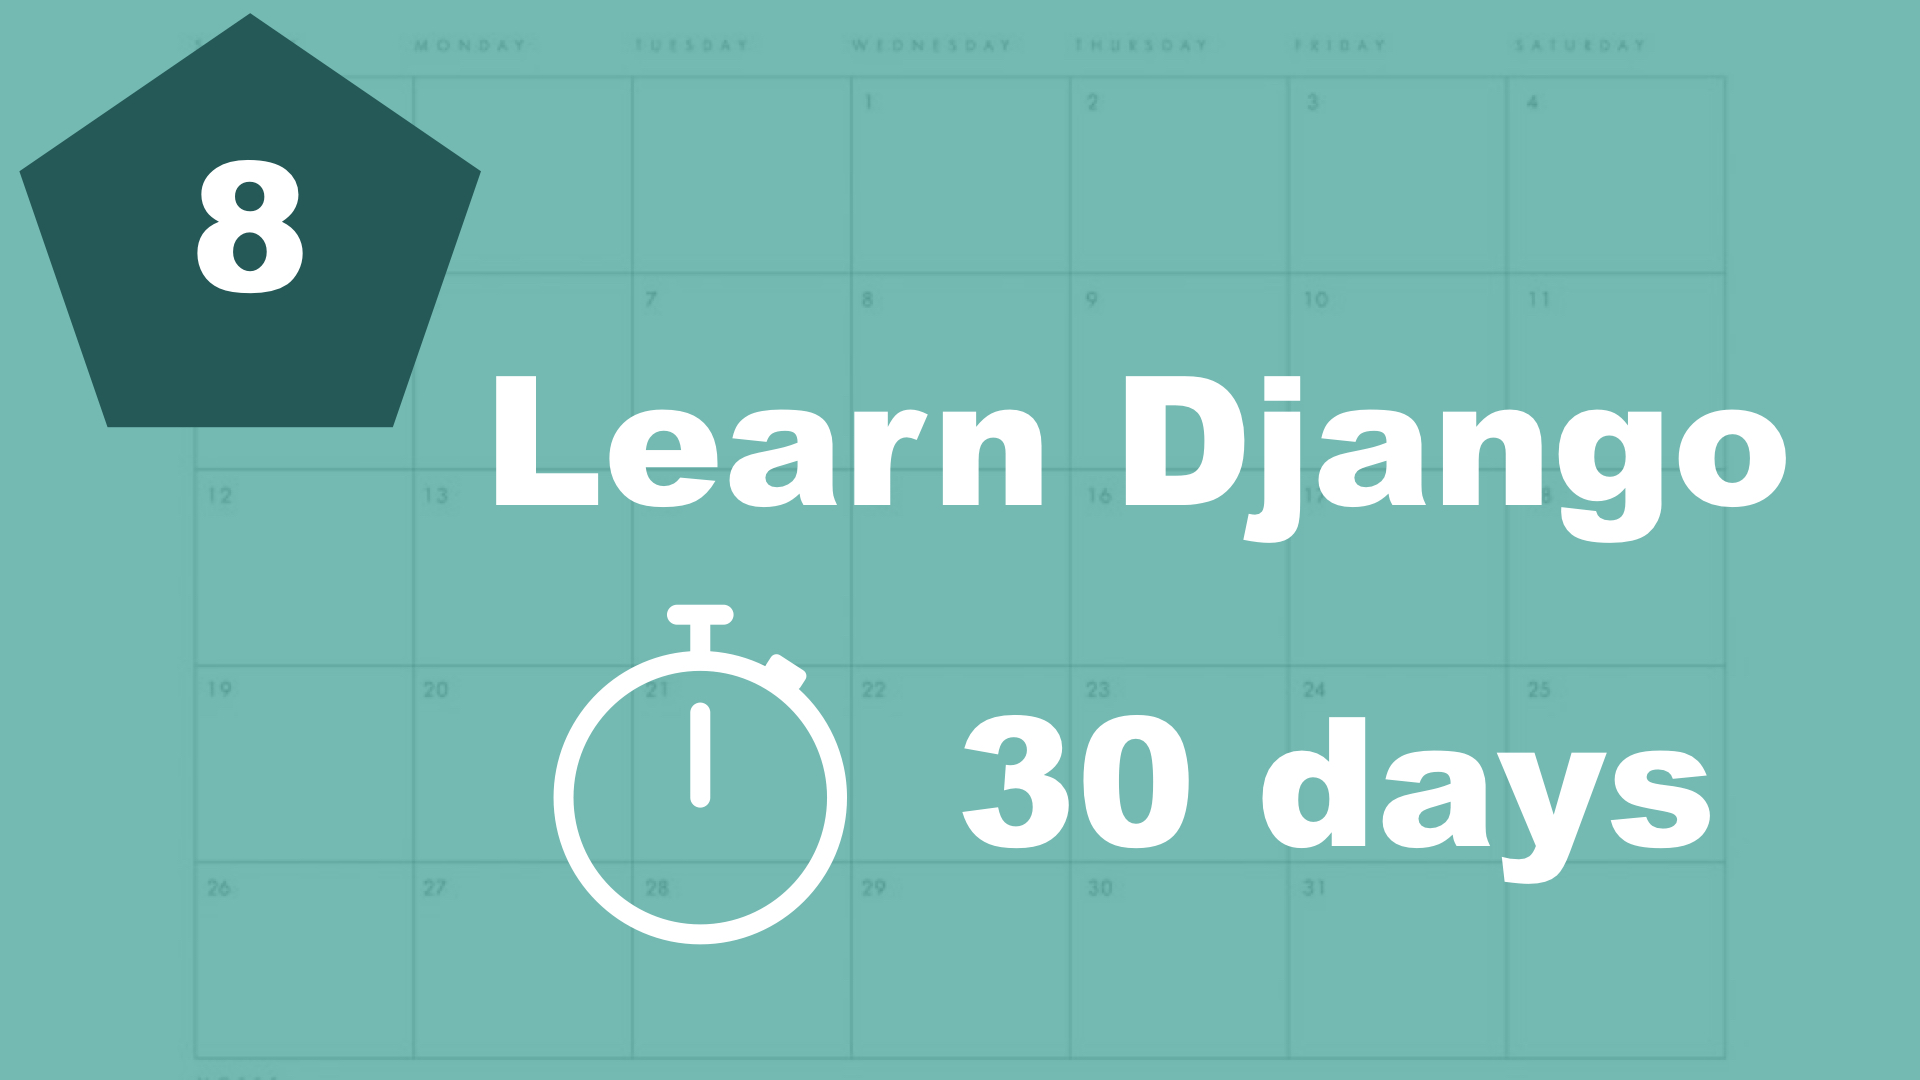 Extending templates - 30 days of Django